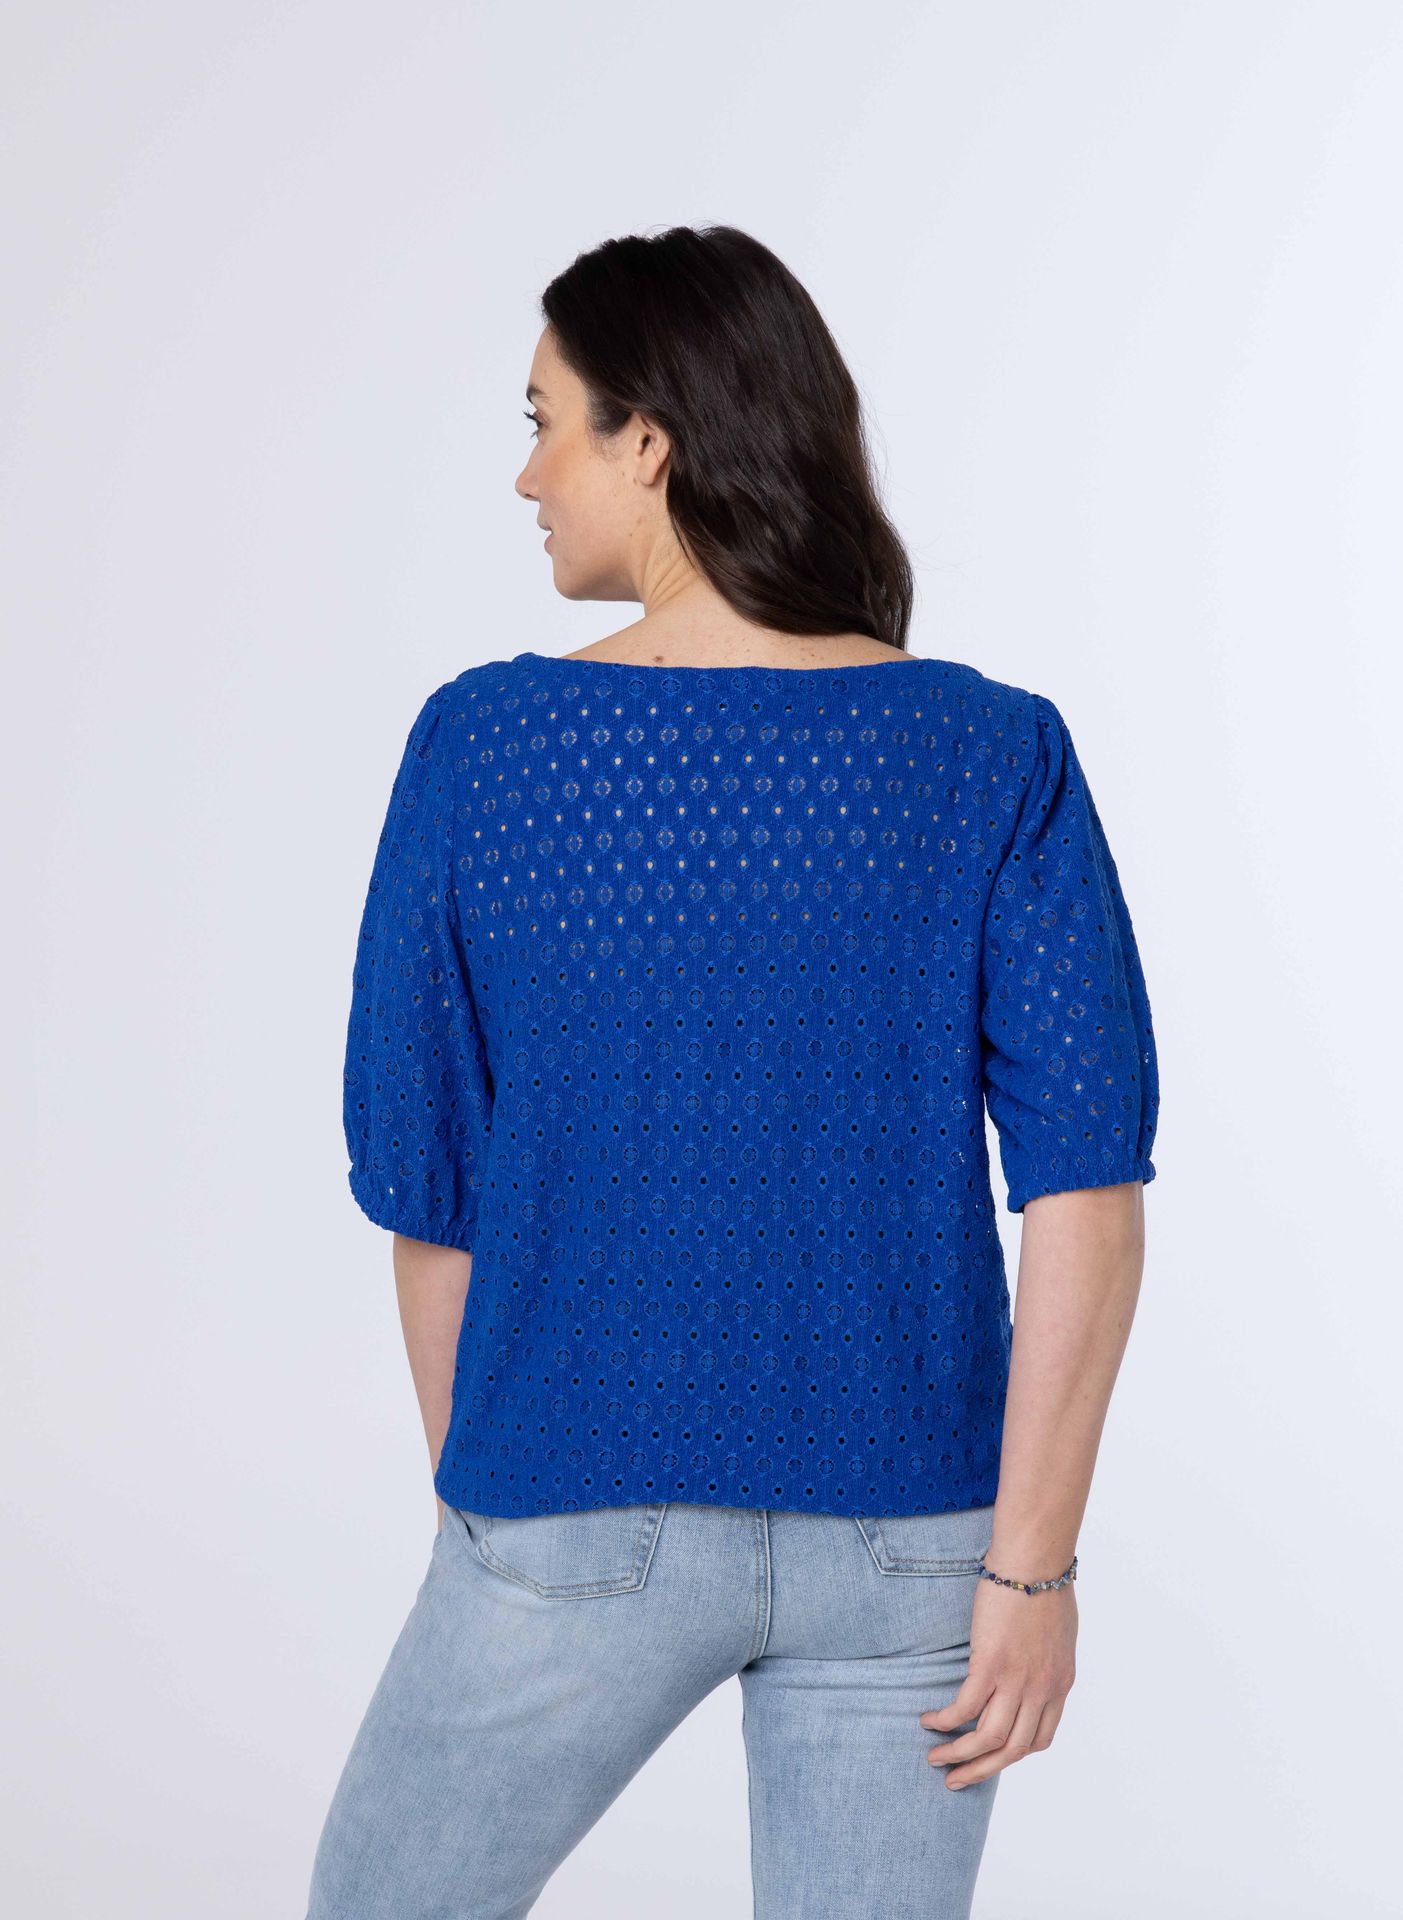 Norah Blauw shirt met koordjes cobalt 213679-468